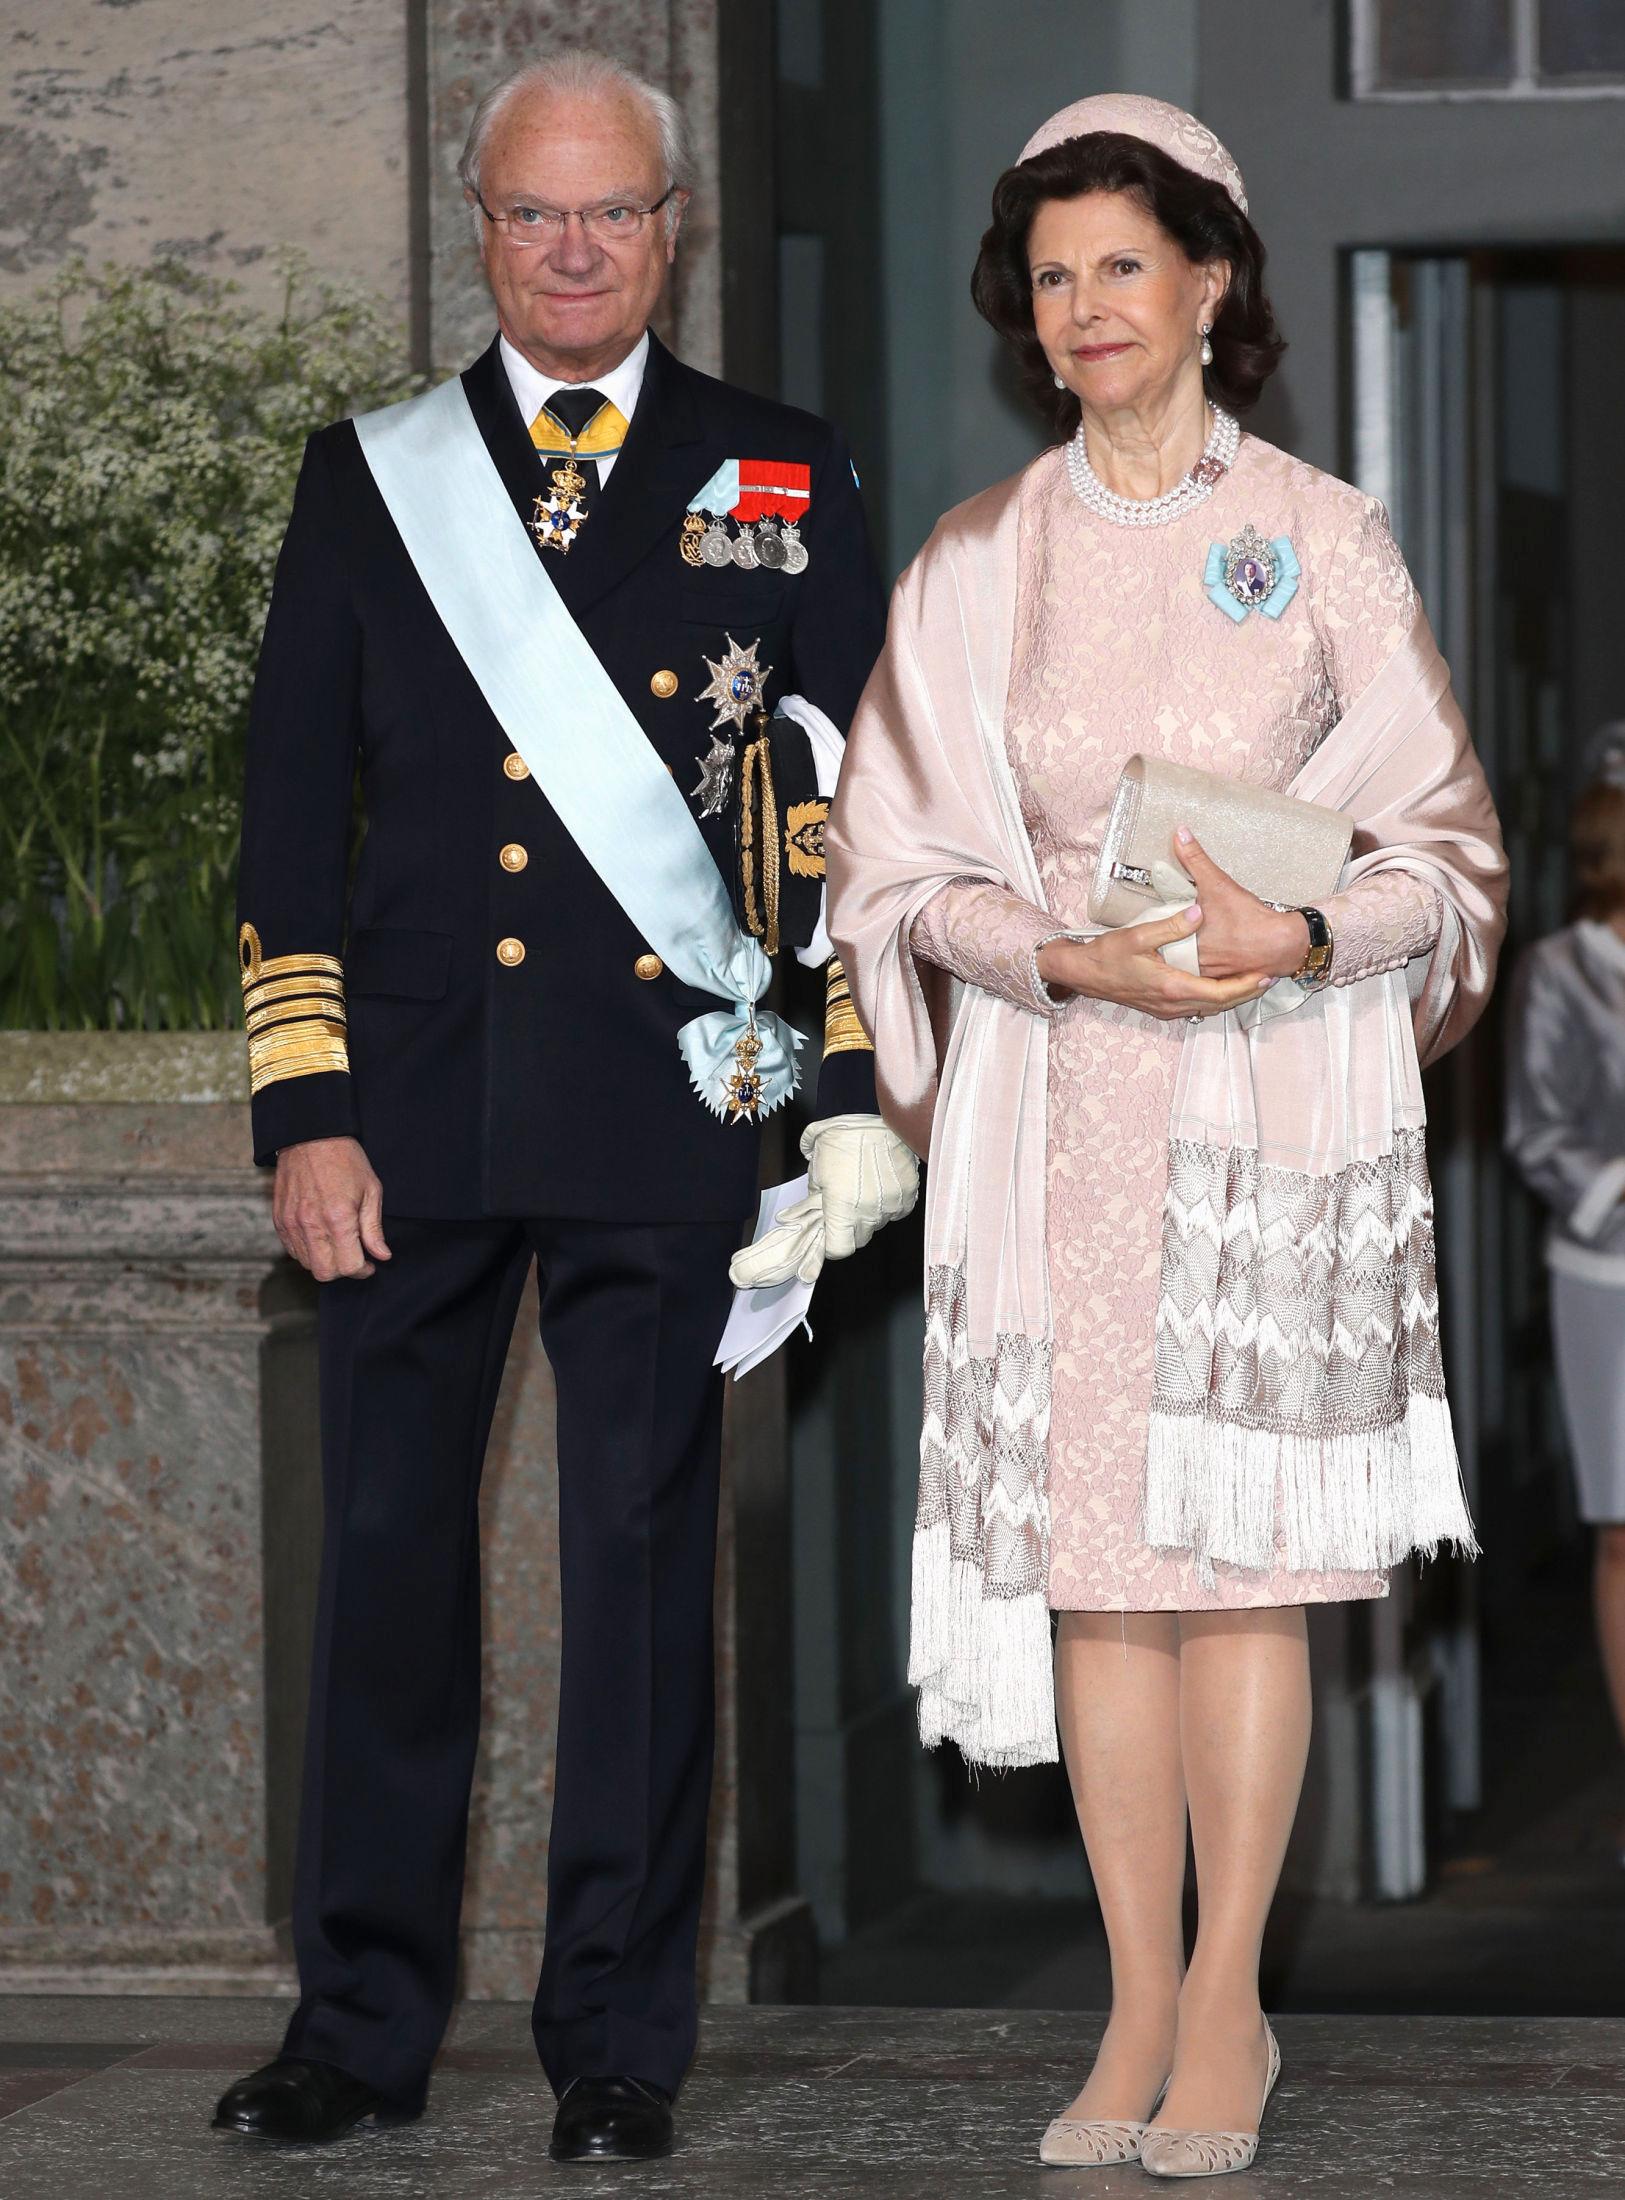 BESTEFORELDRE: Kong Carl Gustaf og dronning Silvia kom selvsagt sammen - dronningen i dus rosa blondekjole. Foto: Getty Images